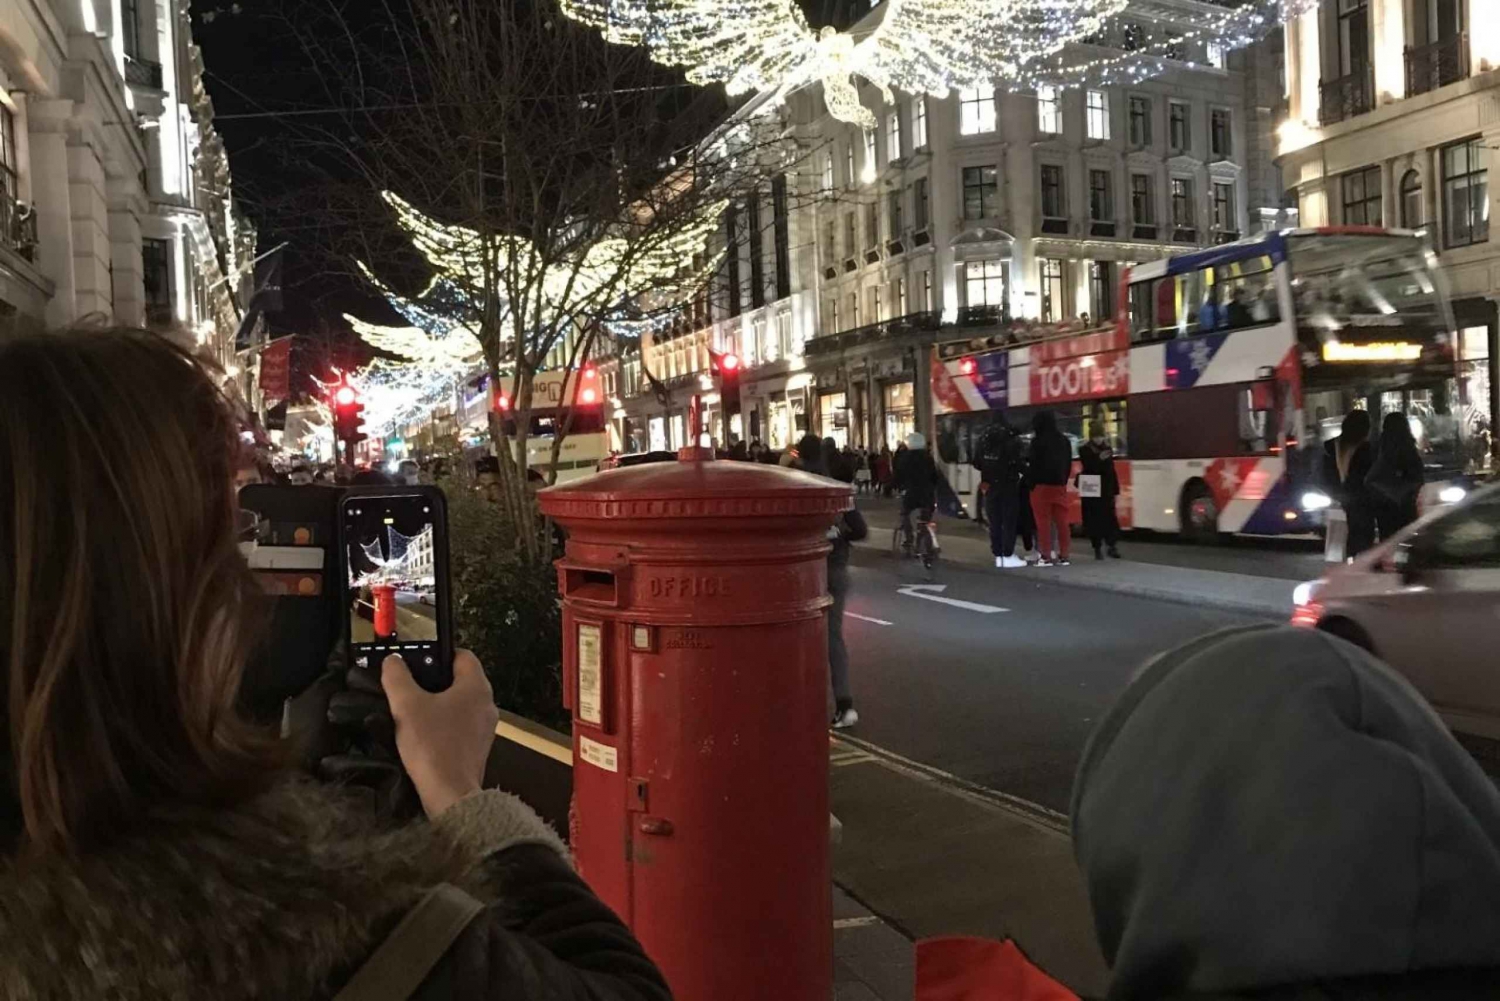 London: Magical Christmas Lights walking tour!